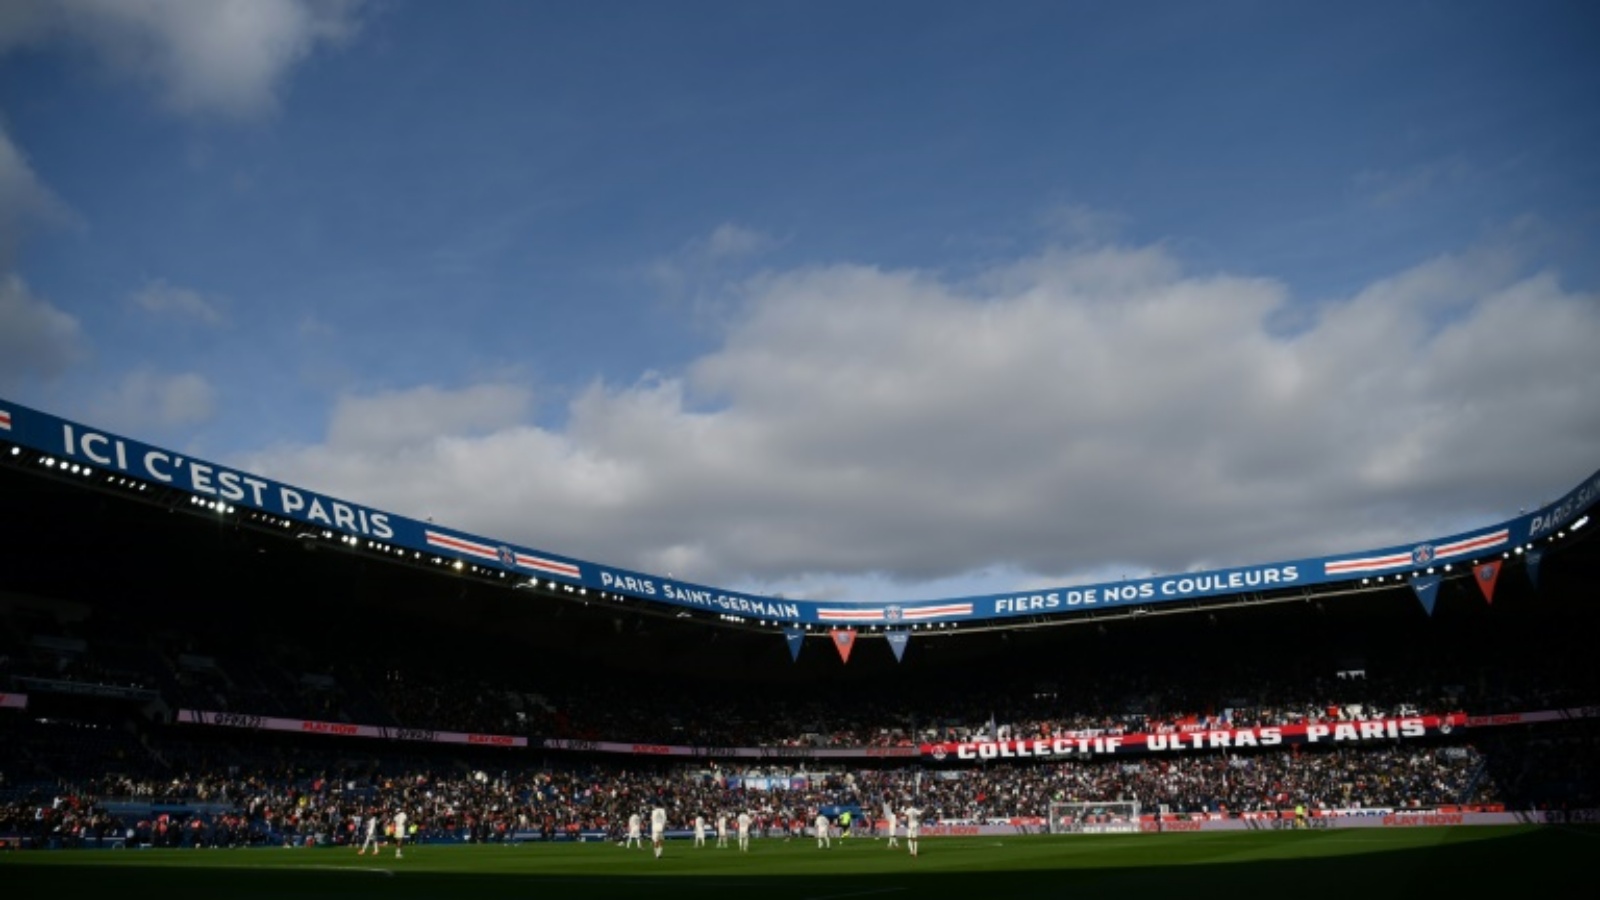 يتسع ملعب بارك دي برانس التابع لباريس سان جرمان بطل فرنسا لحوالى 48 الف مشجّع